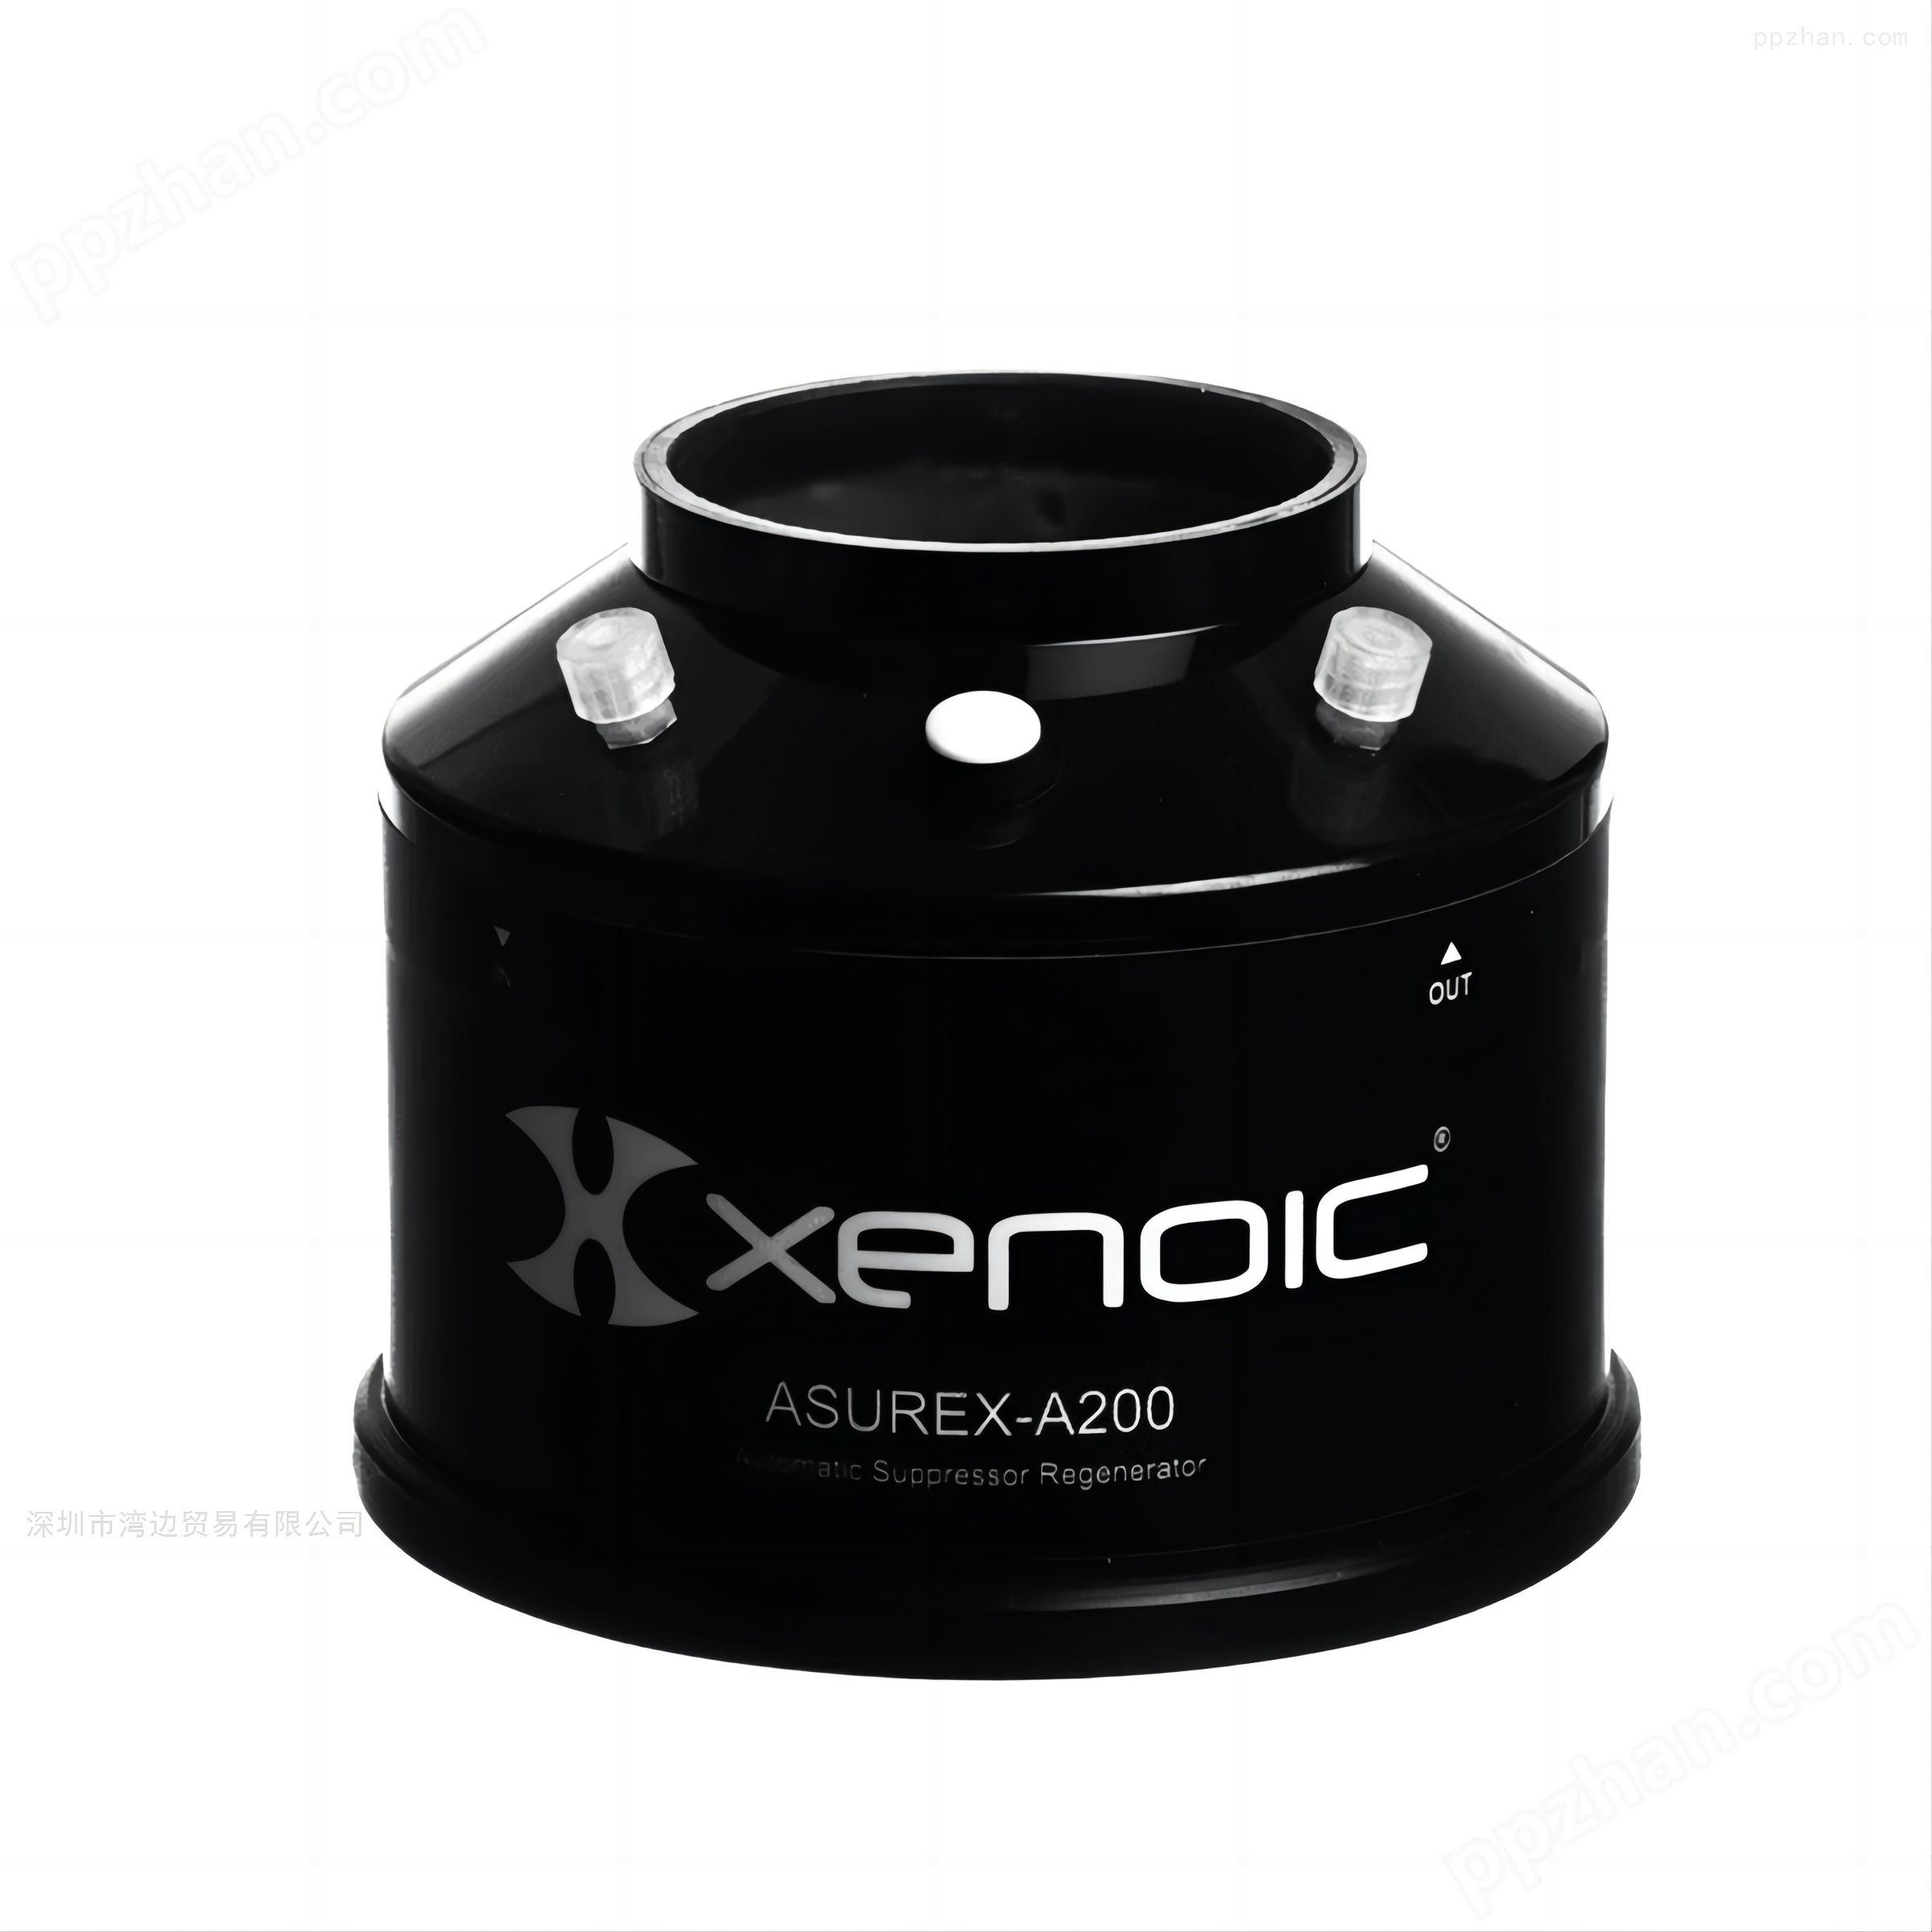 瑞典Diduco品牌Xenoic系列抑制器产品